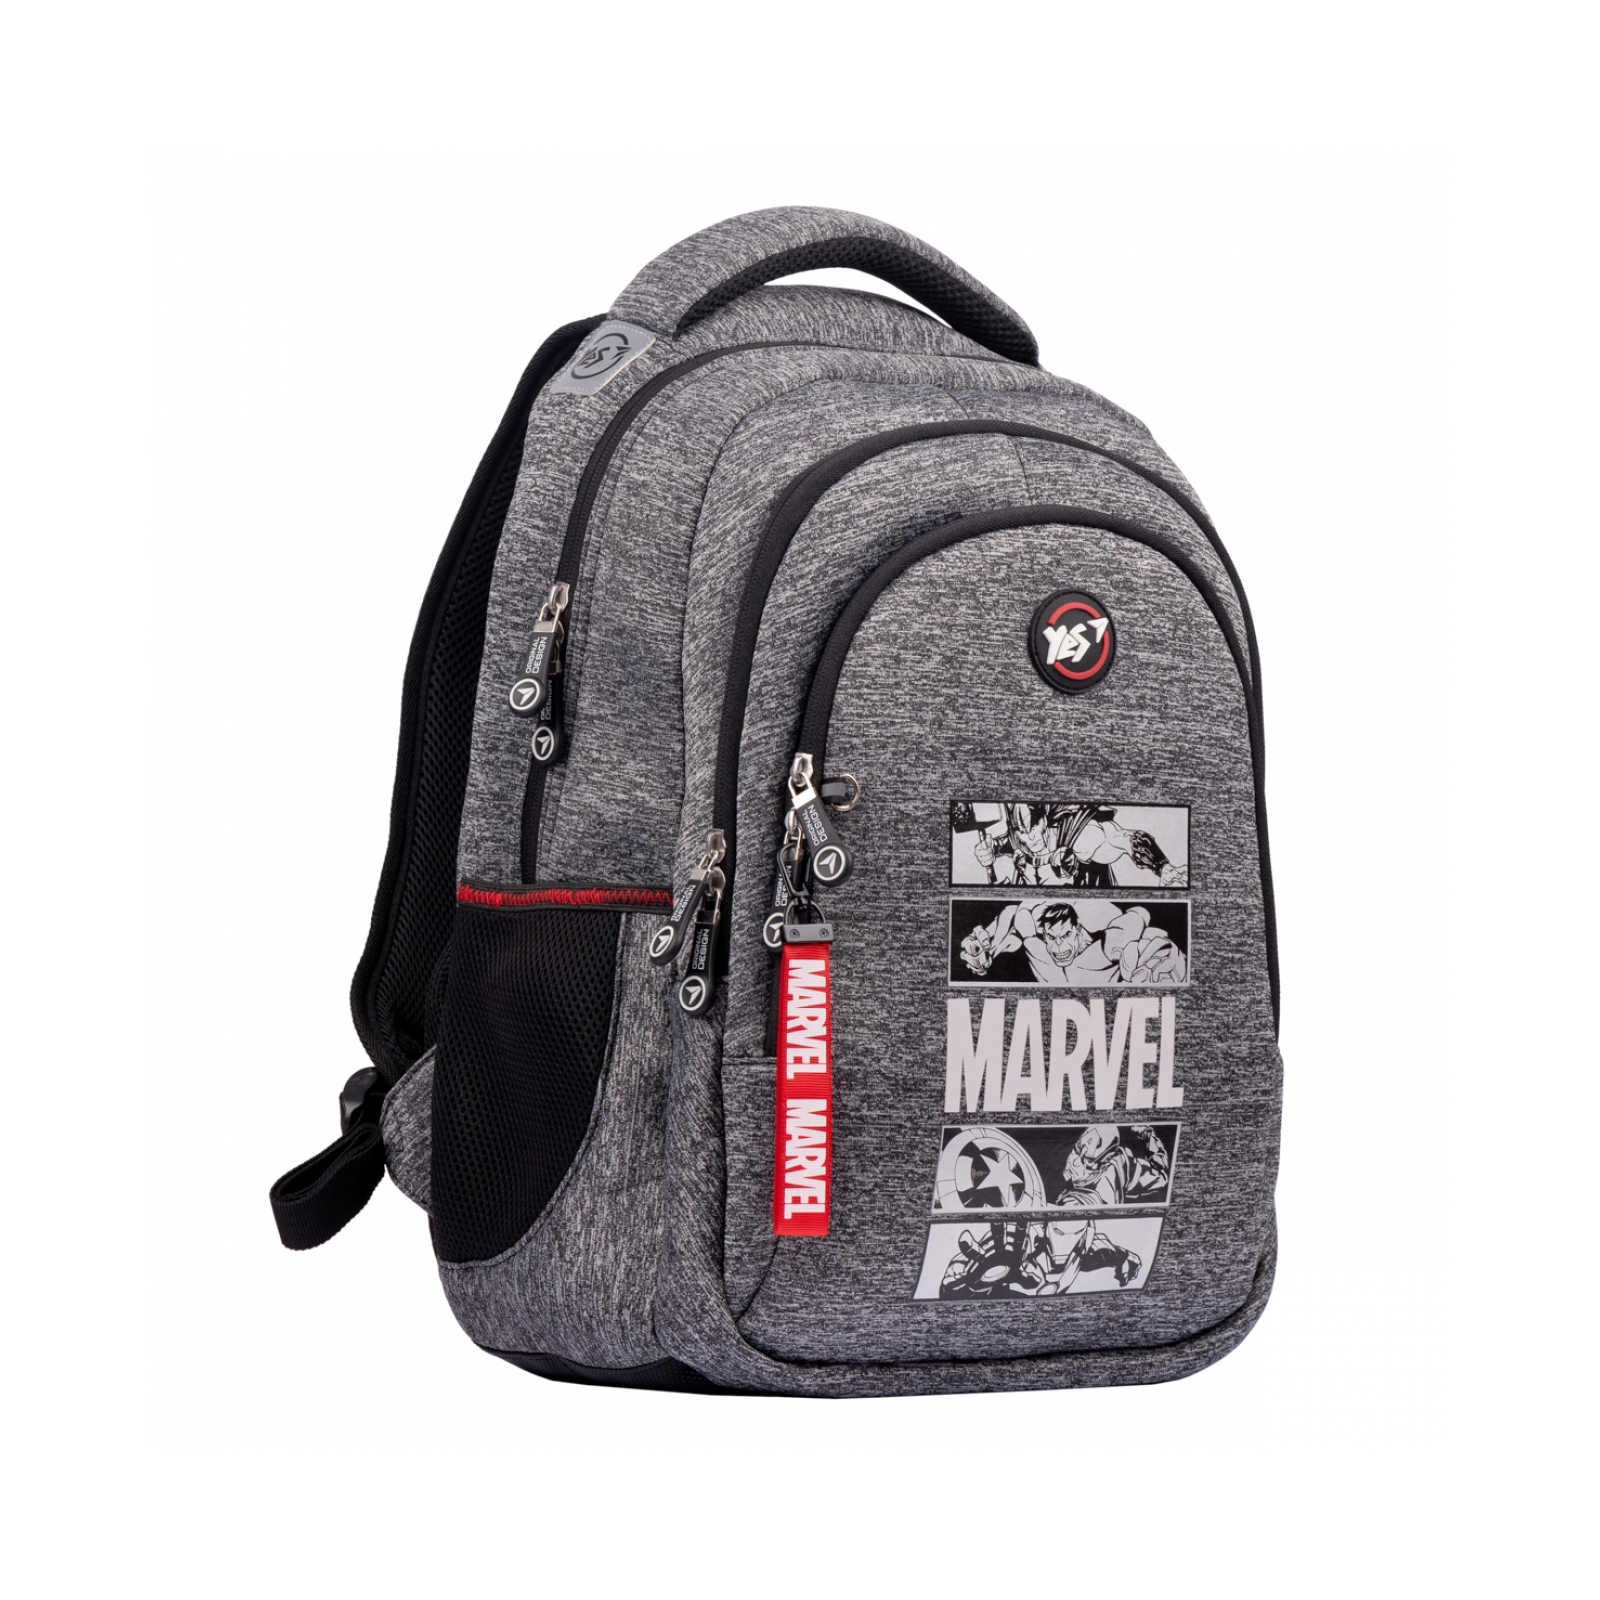 Рюкзак школьный Yes TS-41 Marvel.Avengers (554672)